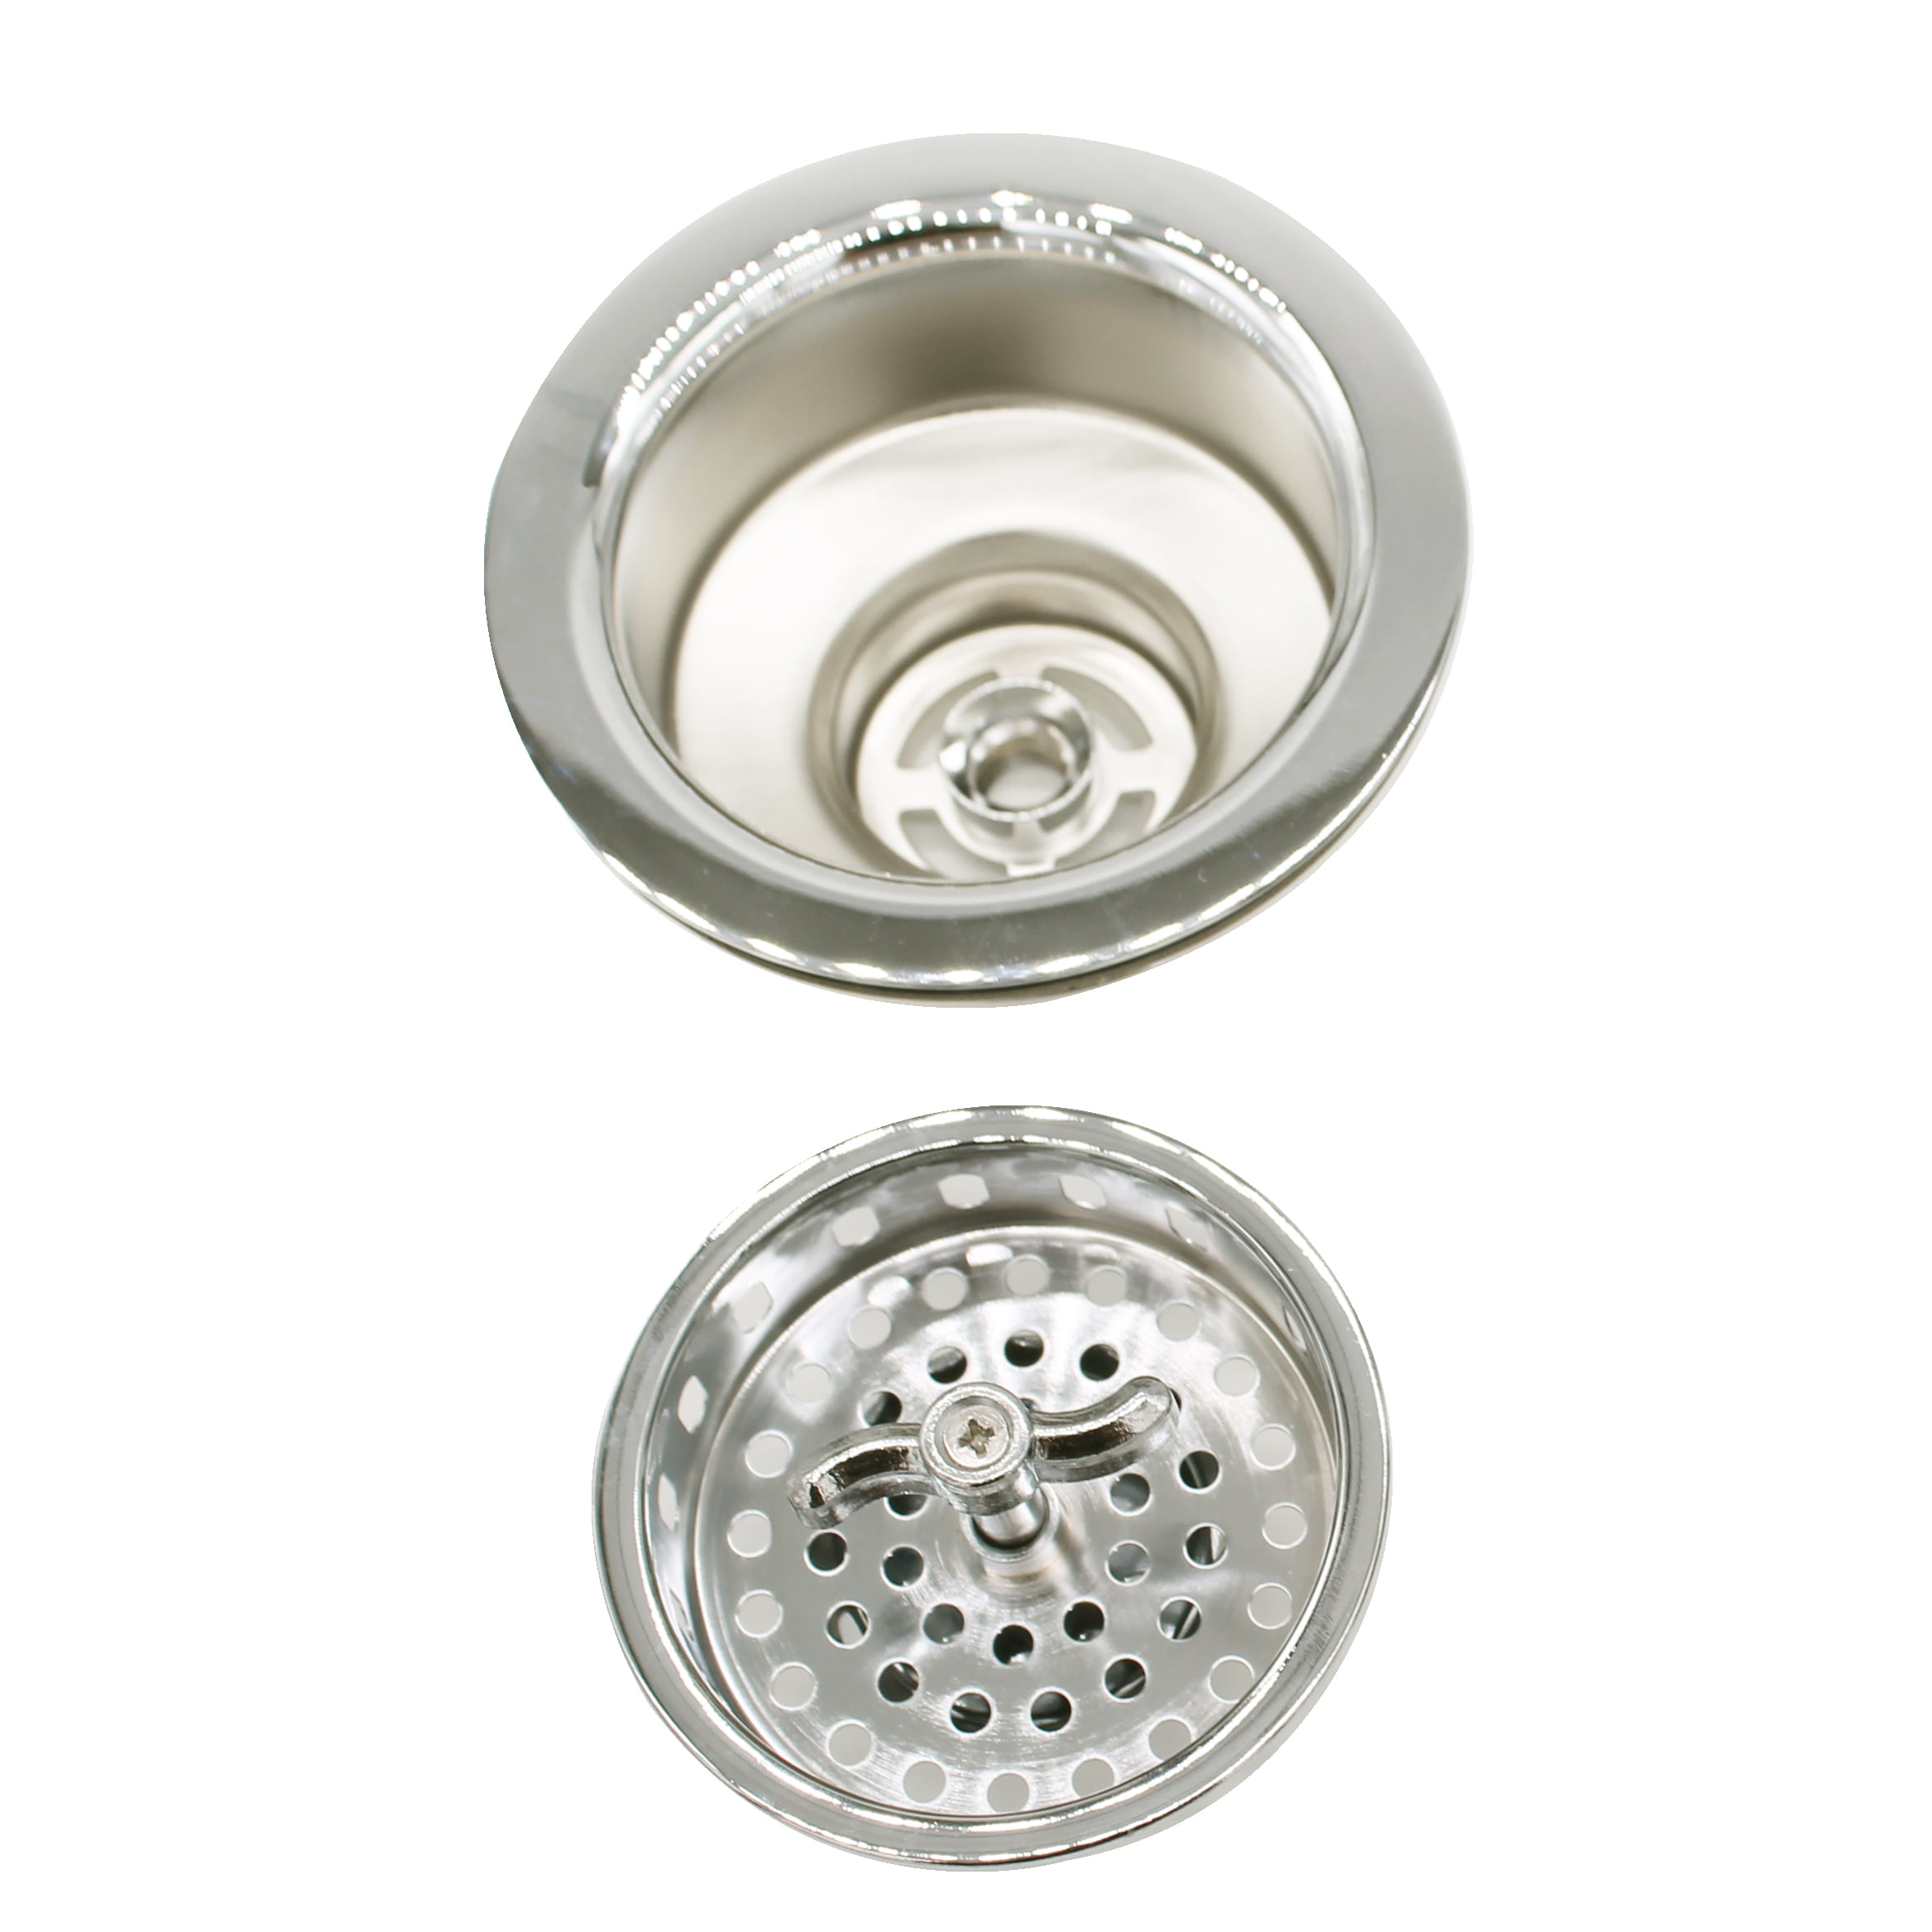 Kitchen Sink Drain with Basket Strainer - Aged Brass 4296226